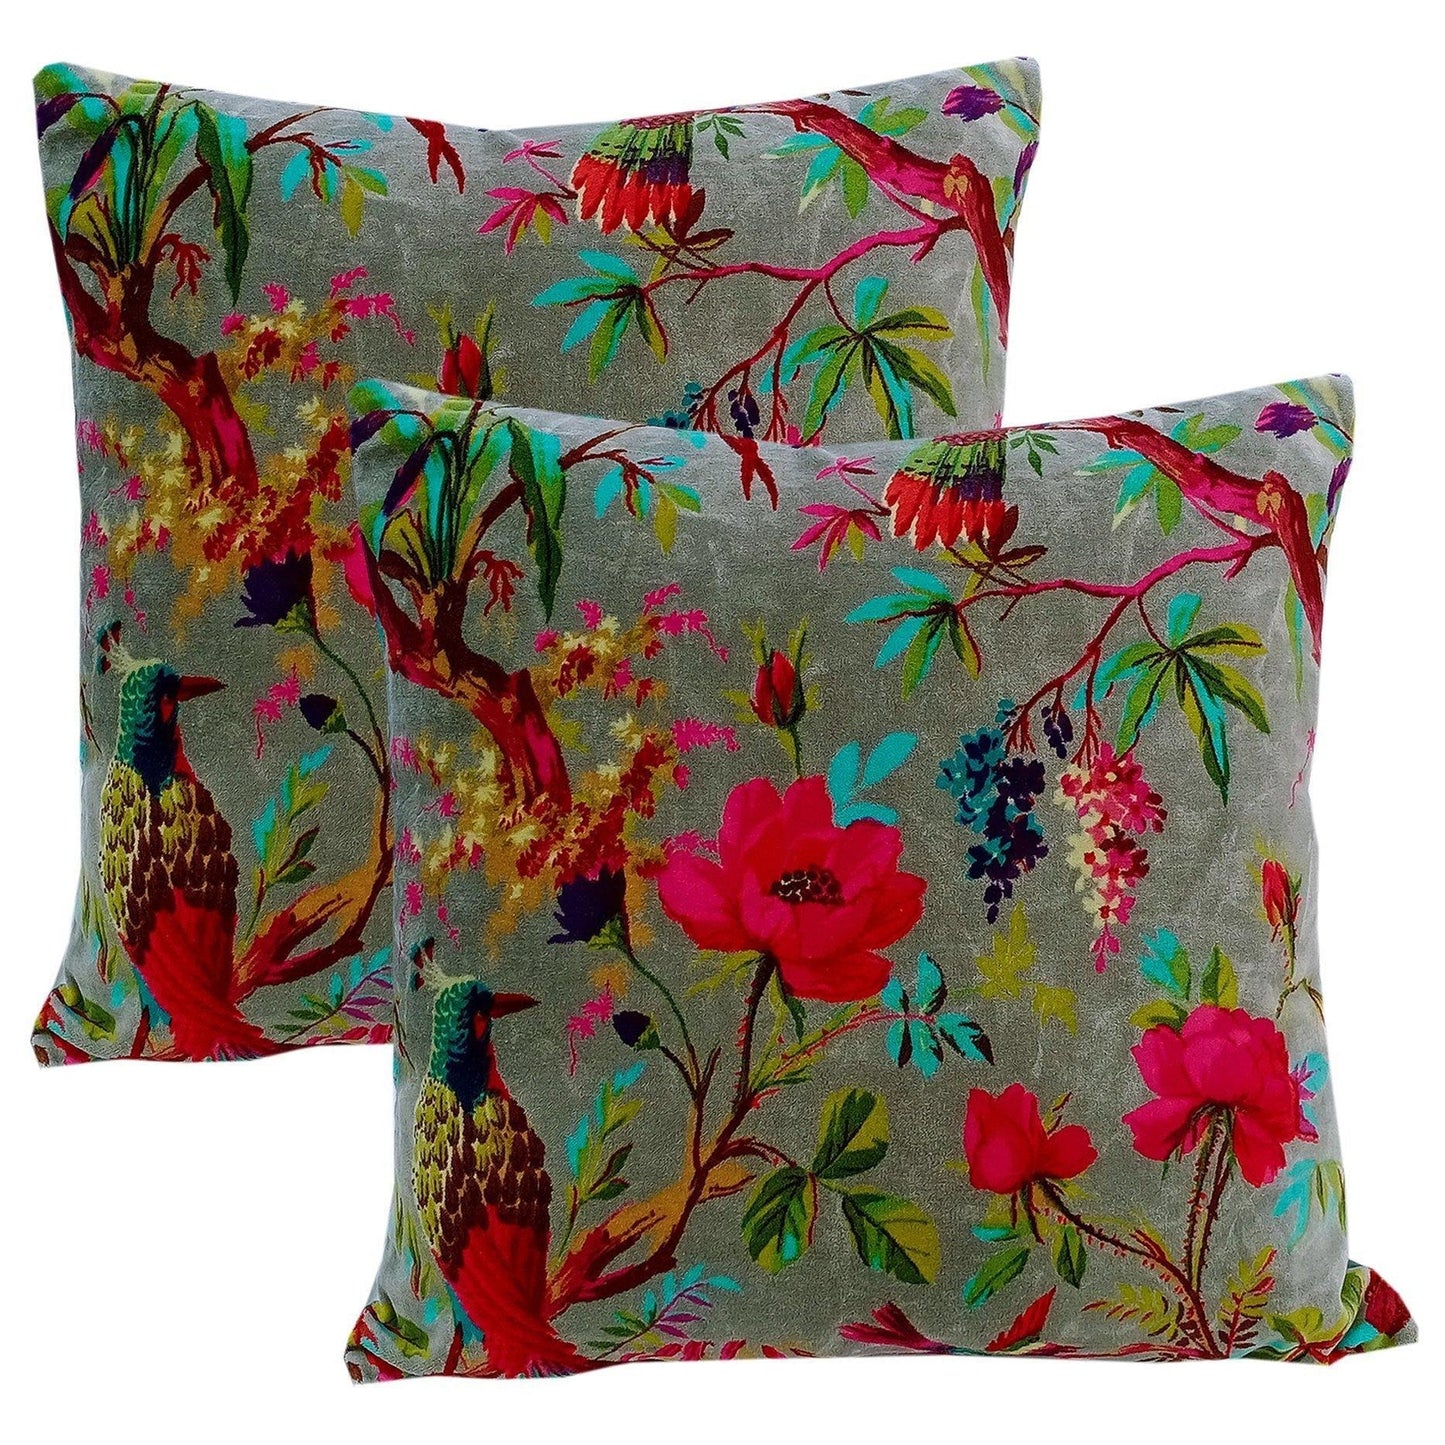 Birds of paradise velvet cushion cover- Grey - The Teal Thread